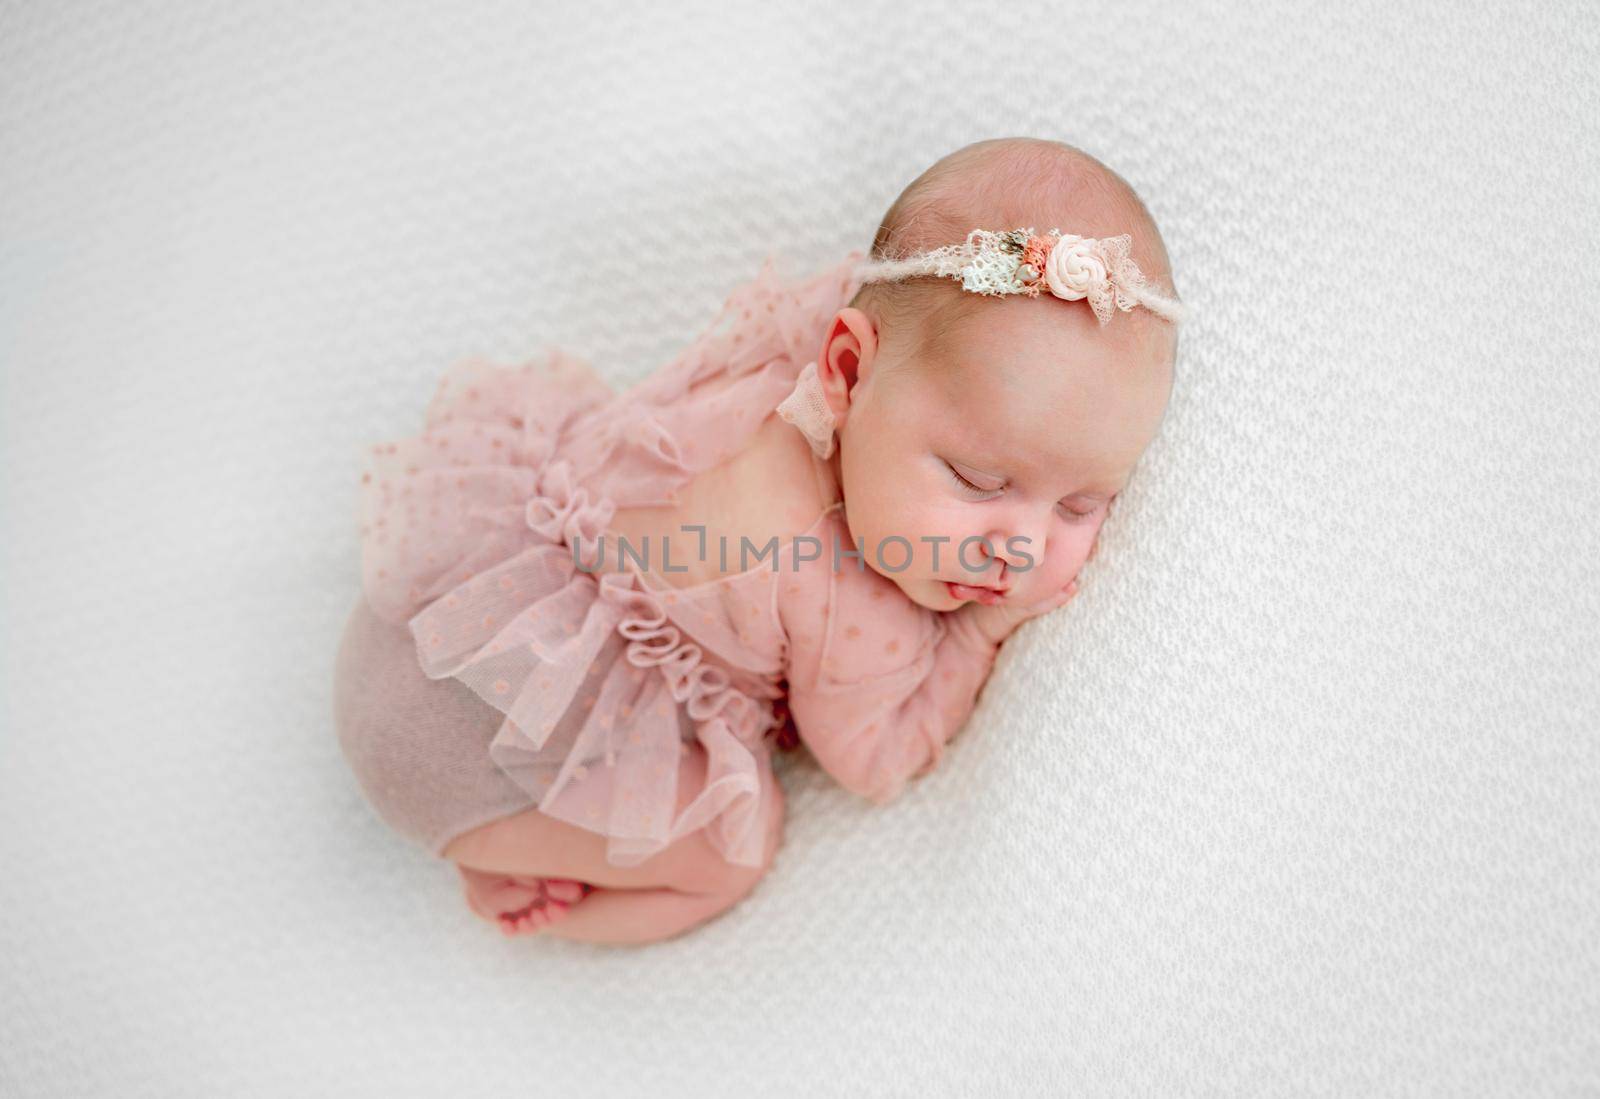 Newborn baby girl photoshoot by tan4ikk1